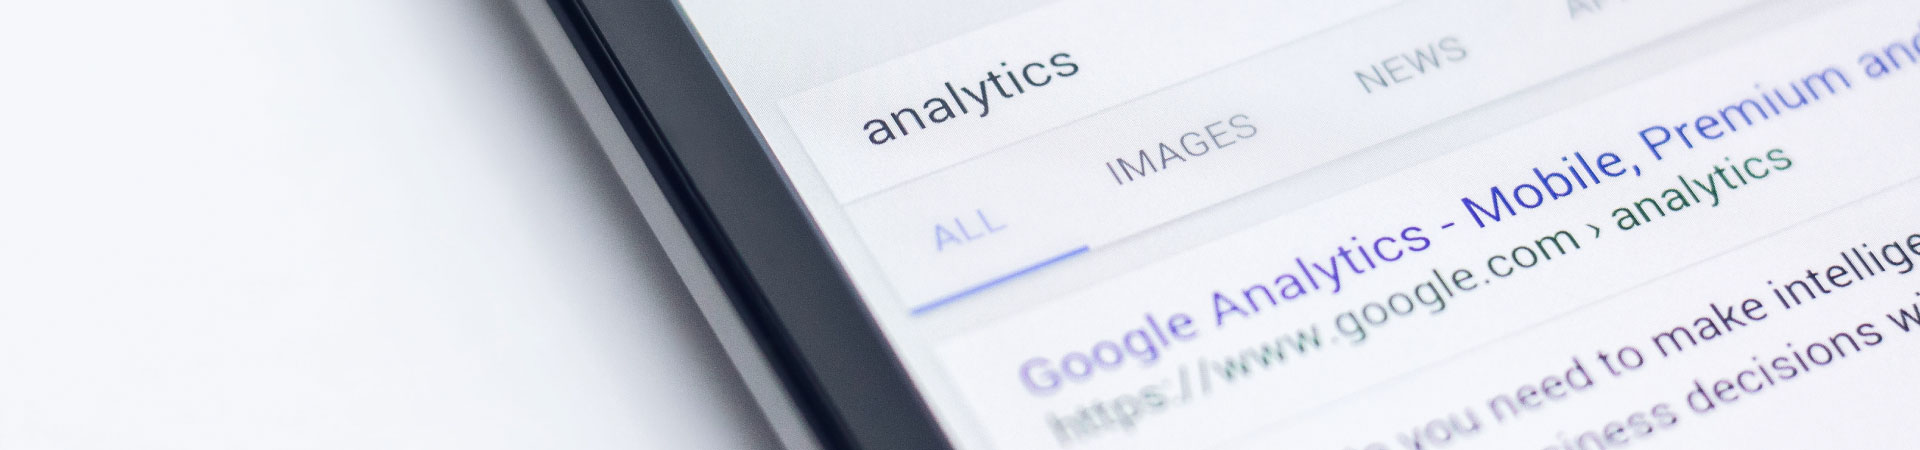 Google Analytics on ipad